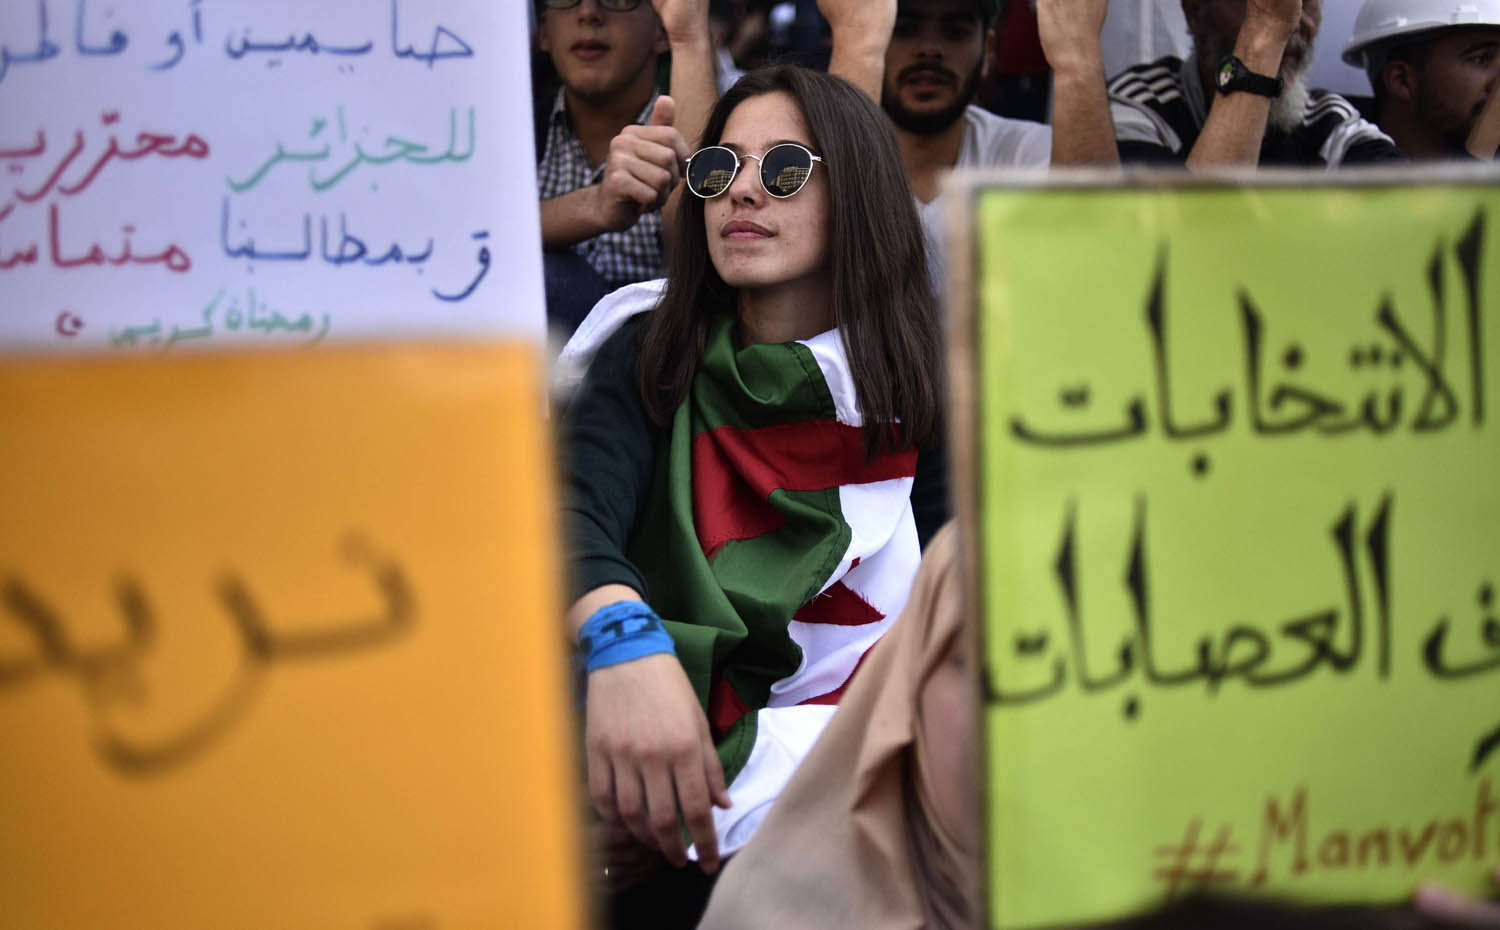 جزائرية في تظاهرة في الجزائر ترفض صيغة الانتخابات القادمة